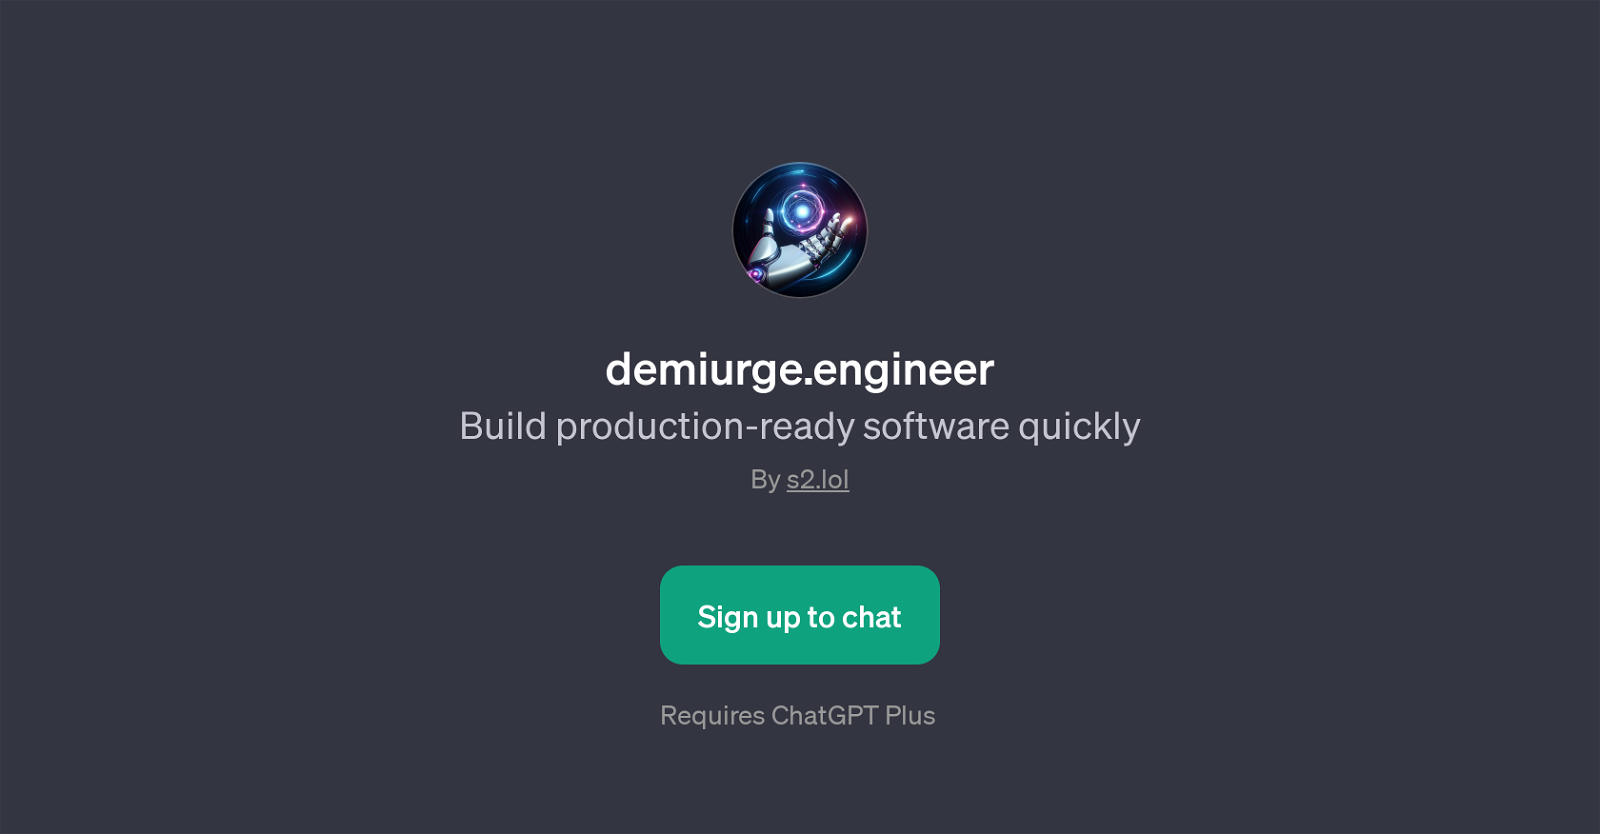 demiurge.engineer website